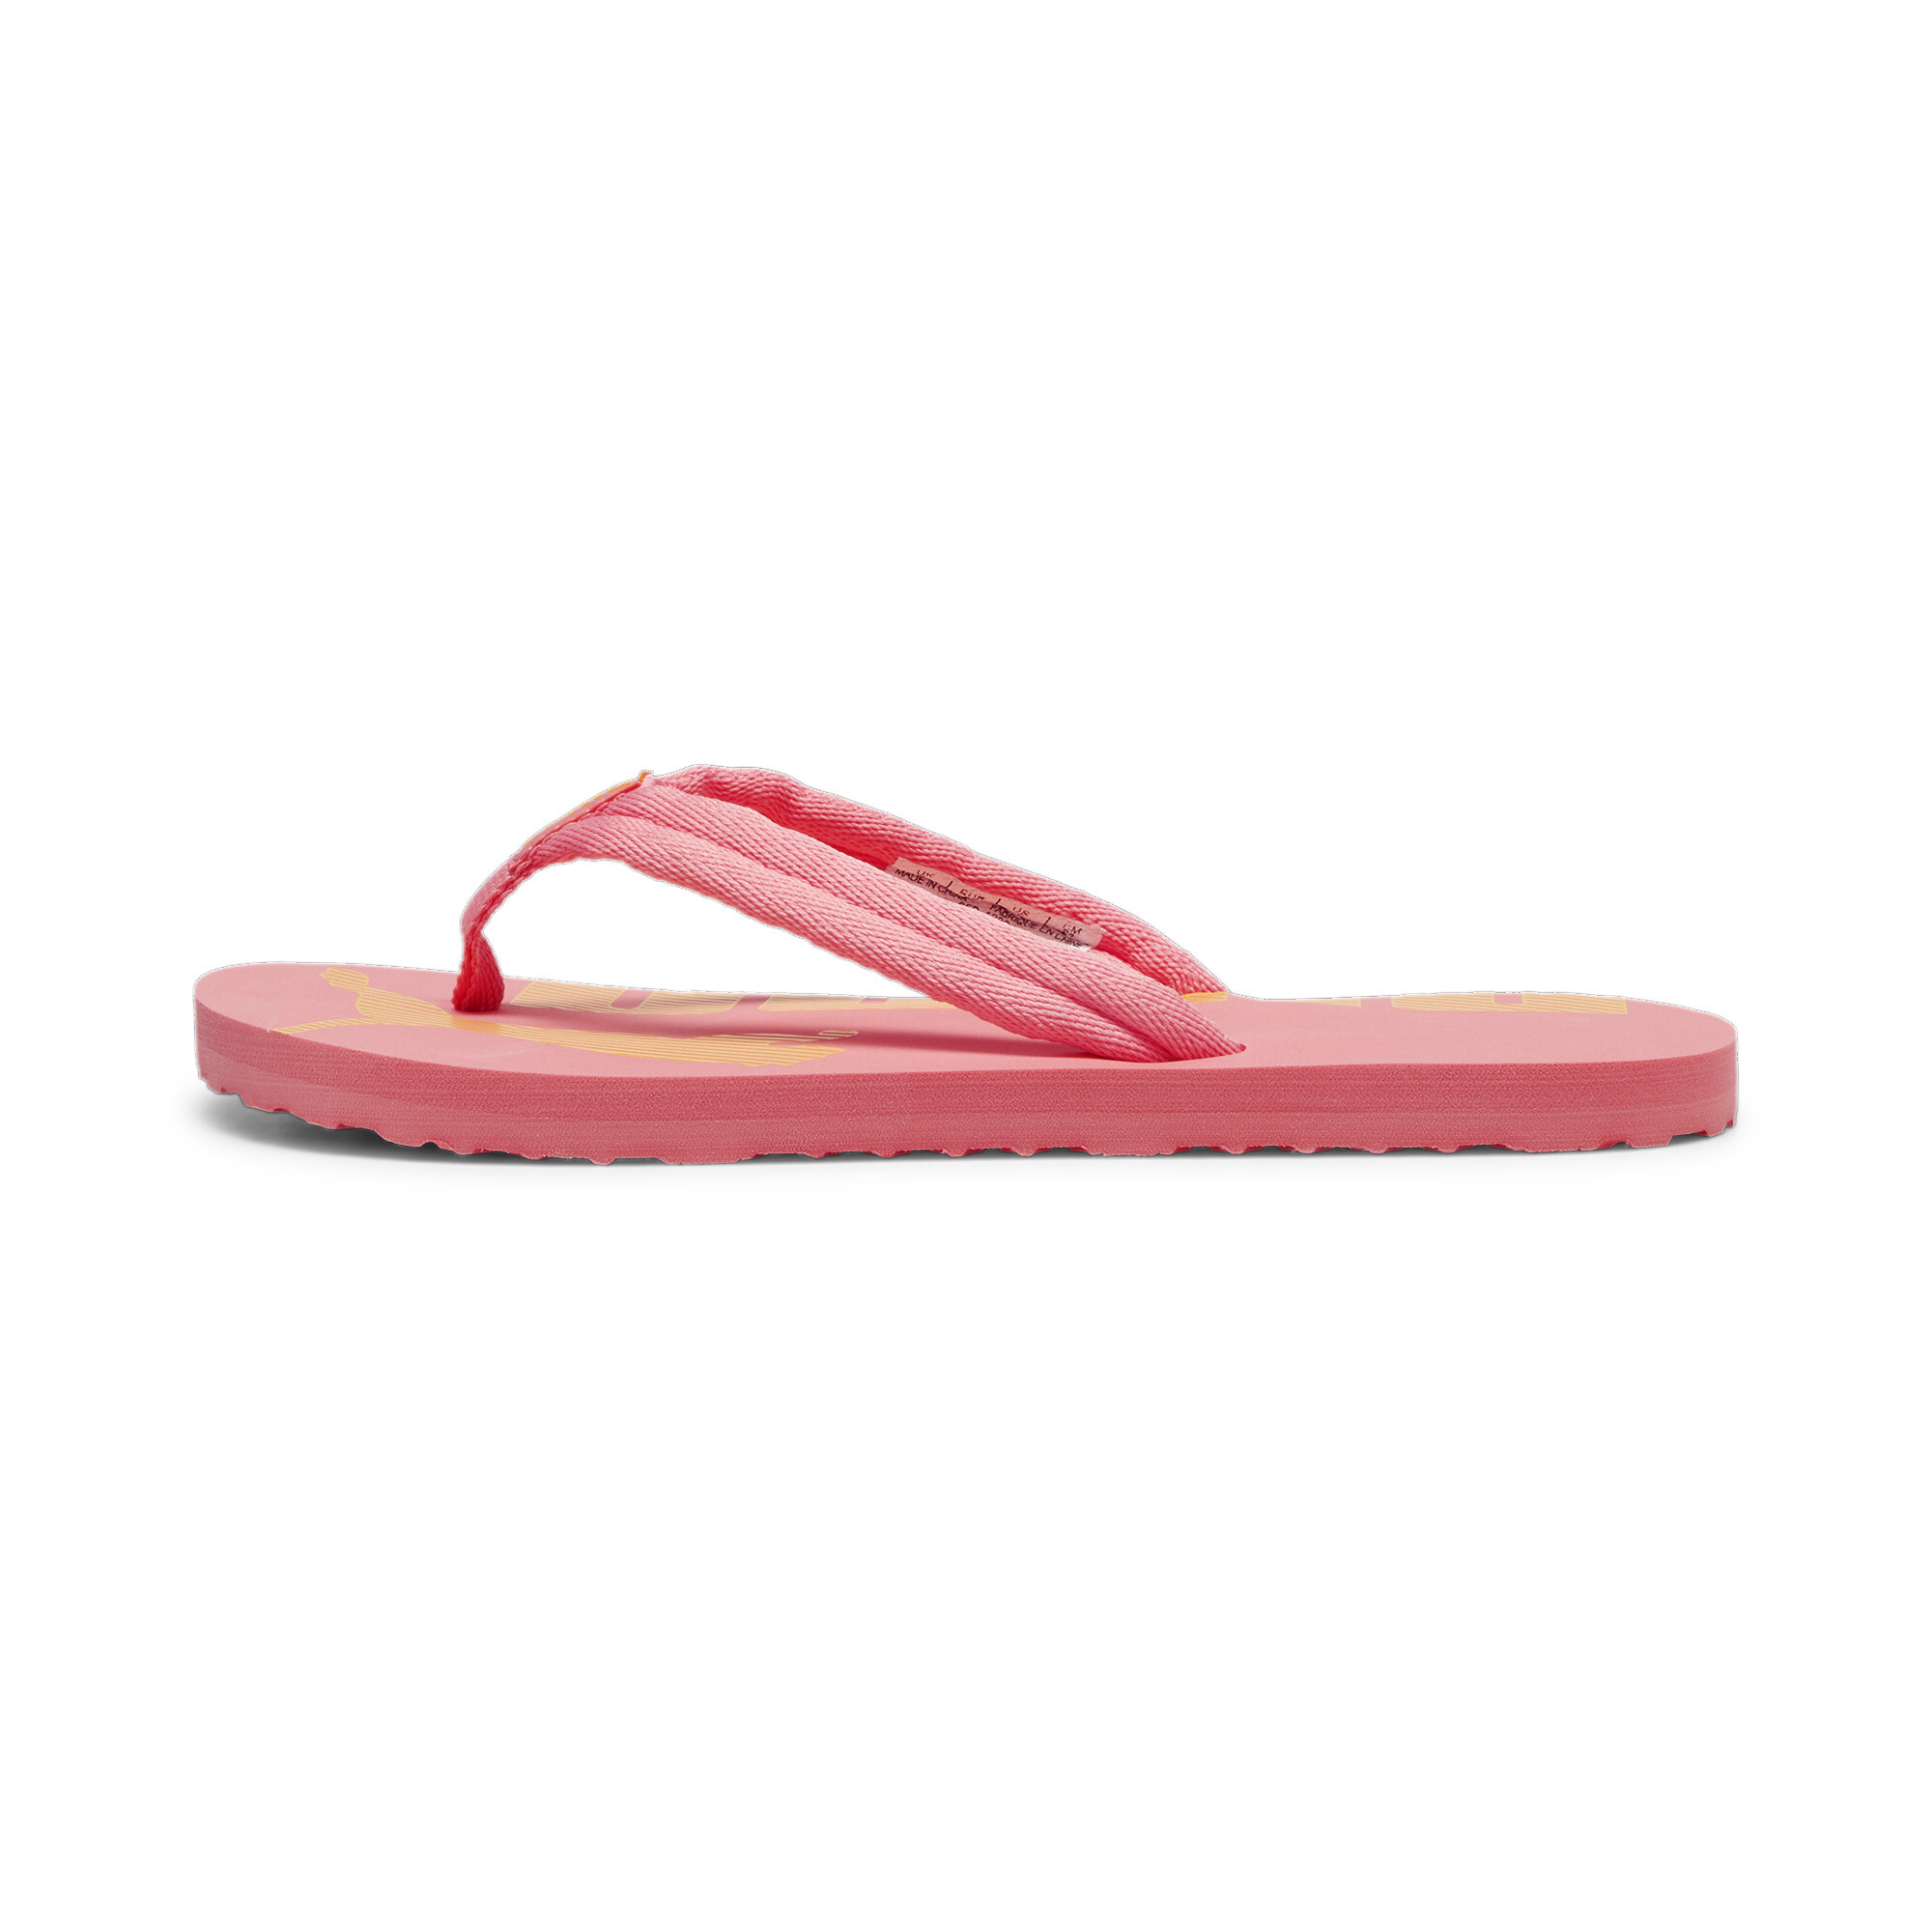 Men's PUMA Epic Flip V2 Sandals In Pink, Size EU 39